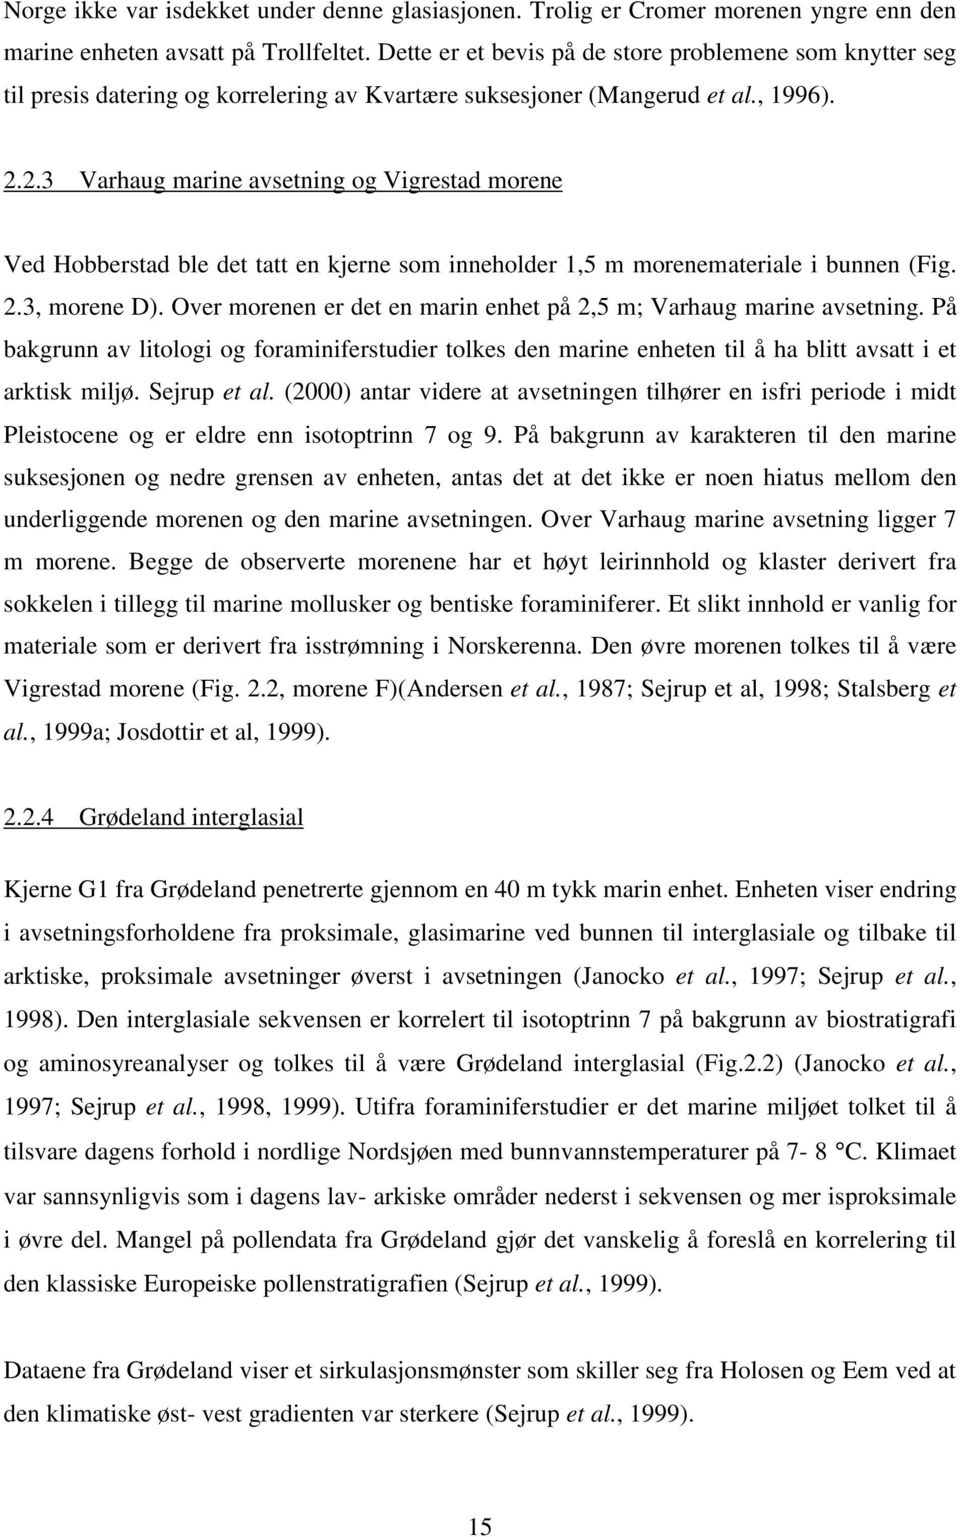 2.3 Varhaug marine avsetning og Vigrestad morene Ved Hobberstad ble det tatt en kjerne som inneholder 1,5 m morenemateriale i bunnen (Fig. 2.3, morene D).